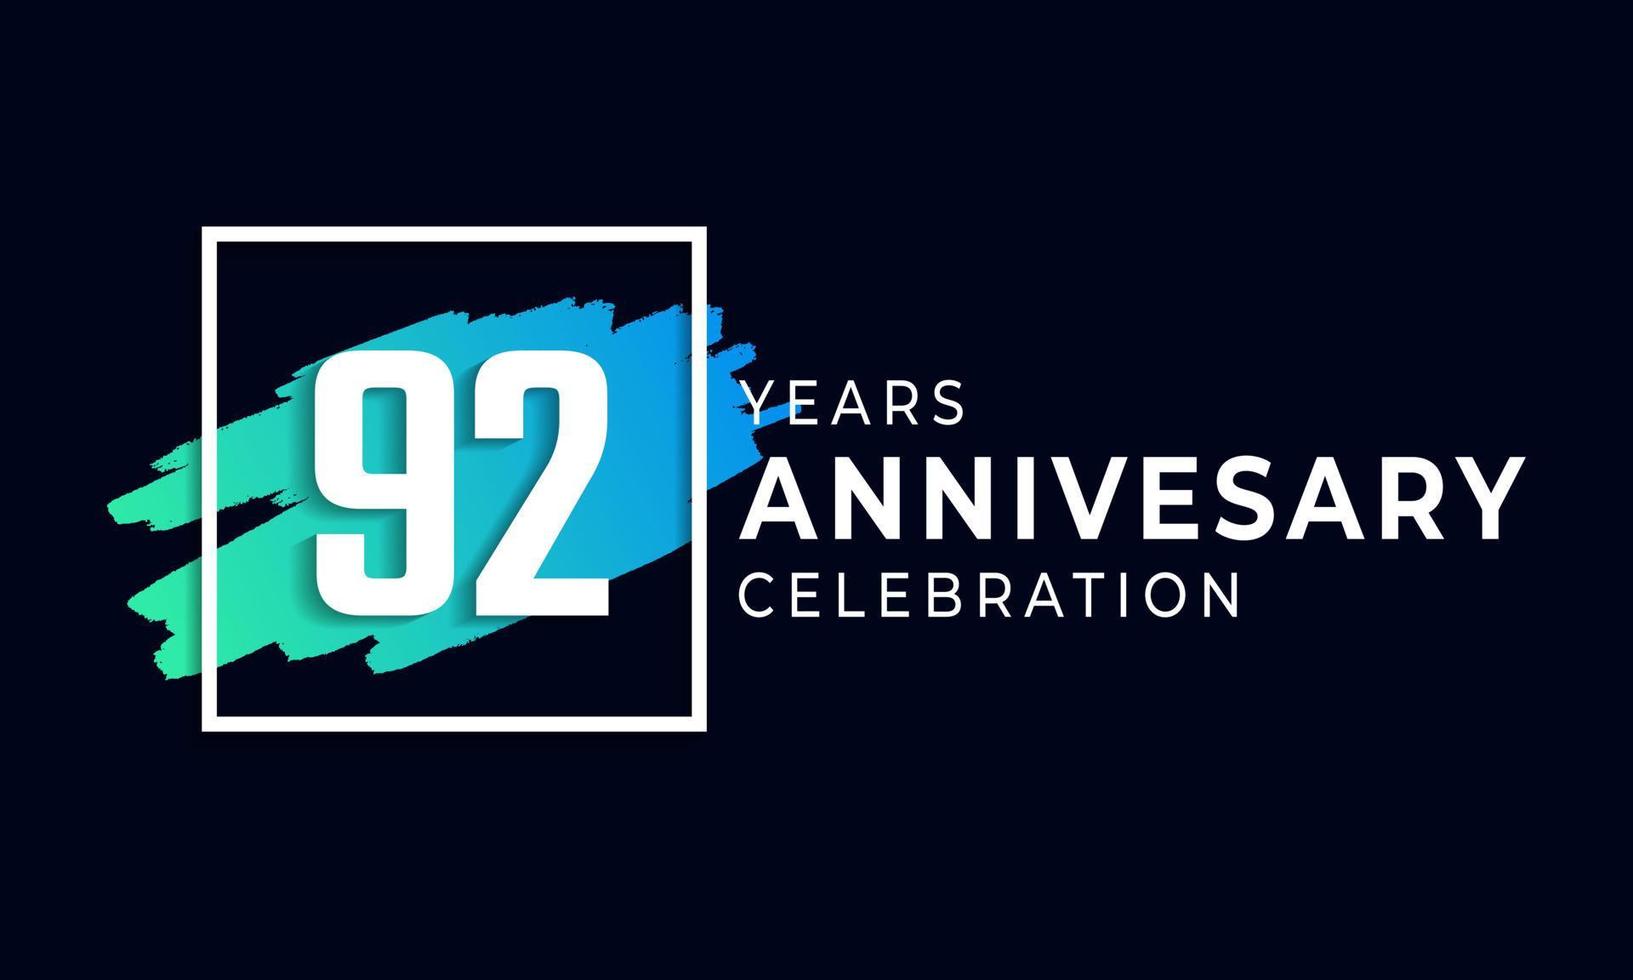 92-jarig jubileumfeest met blauwe borstel en vierkant symbool. gelukkige verjaardag groet viert gebeurtenis geïsoleerd op zwarte achtergrond vector